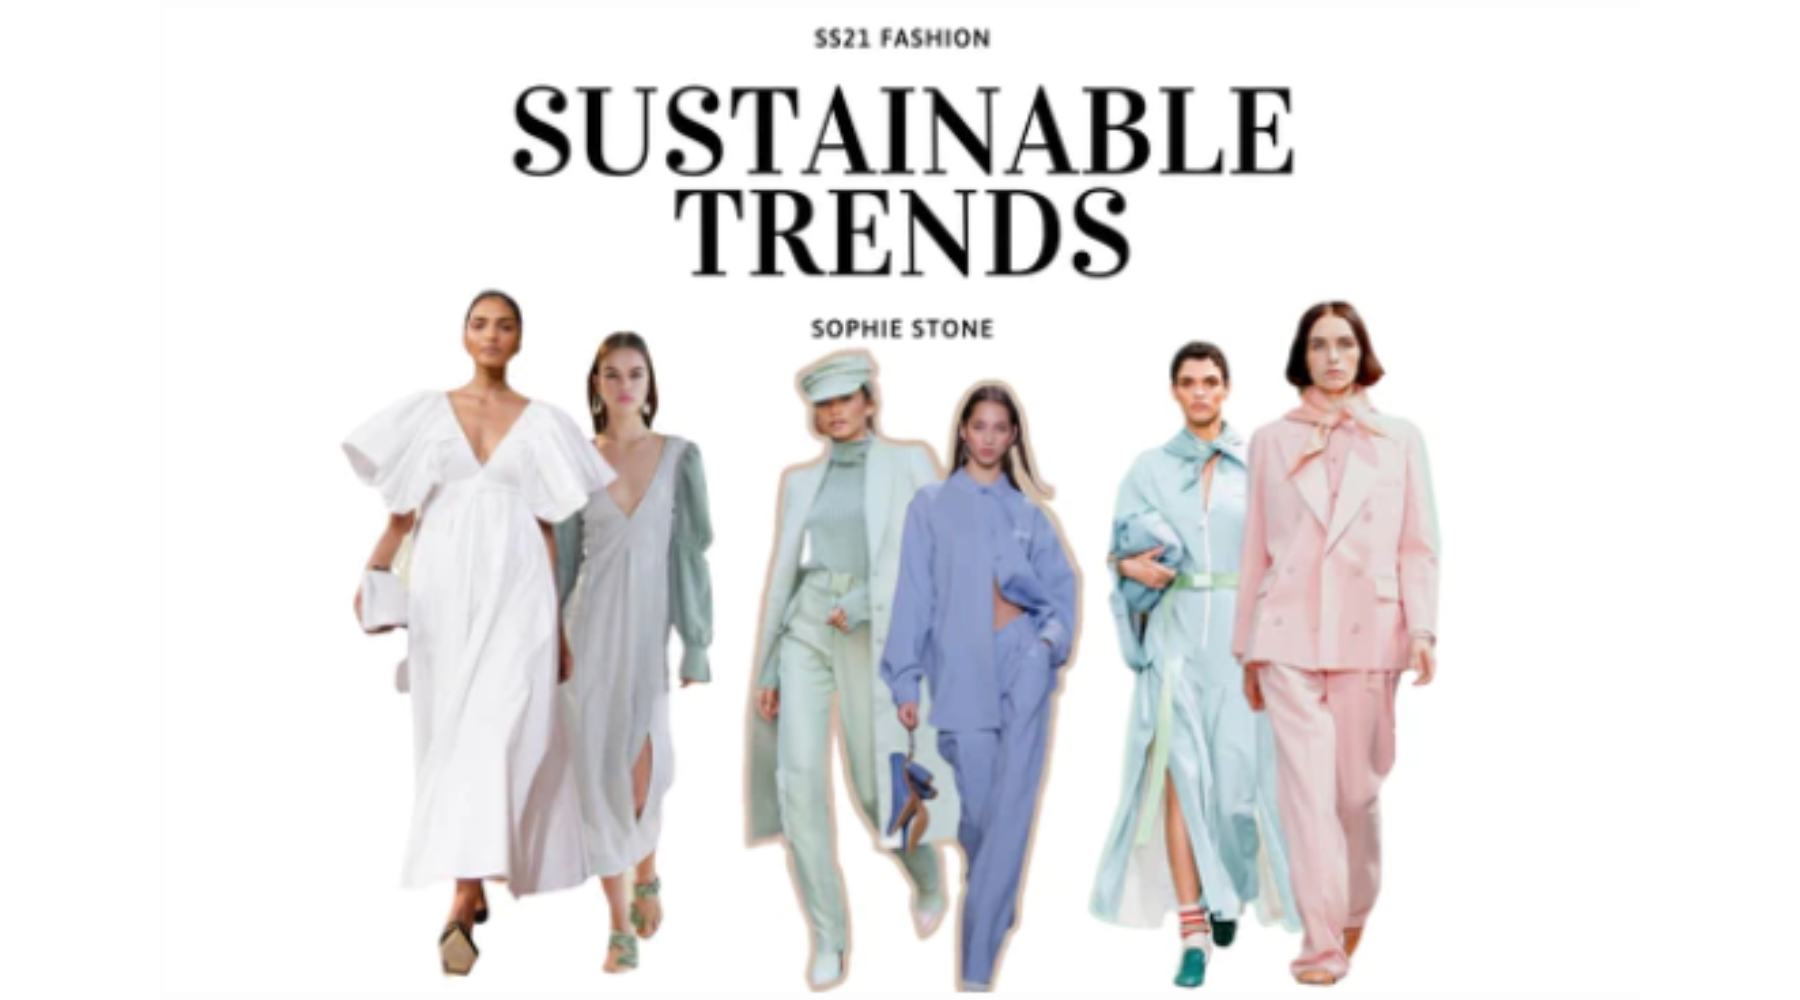 Sustainable trends voor spring/summer '21